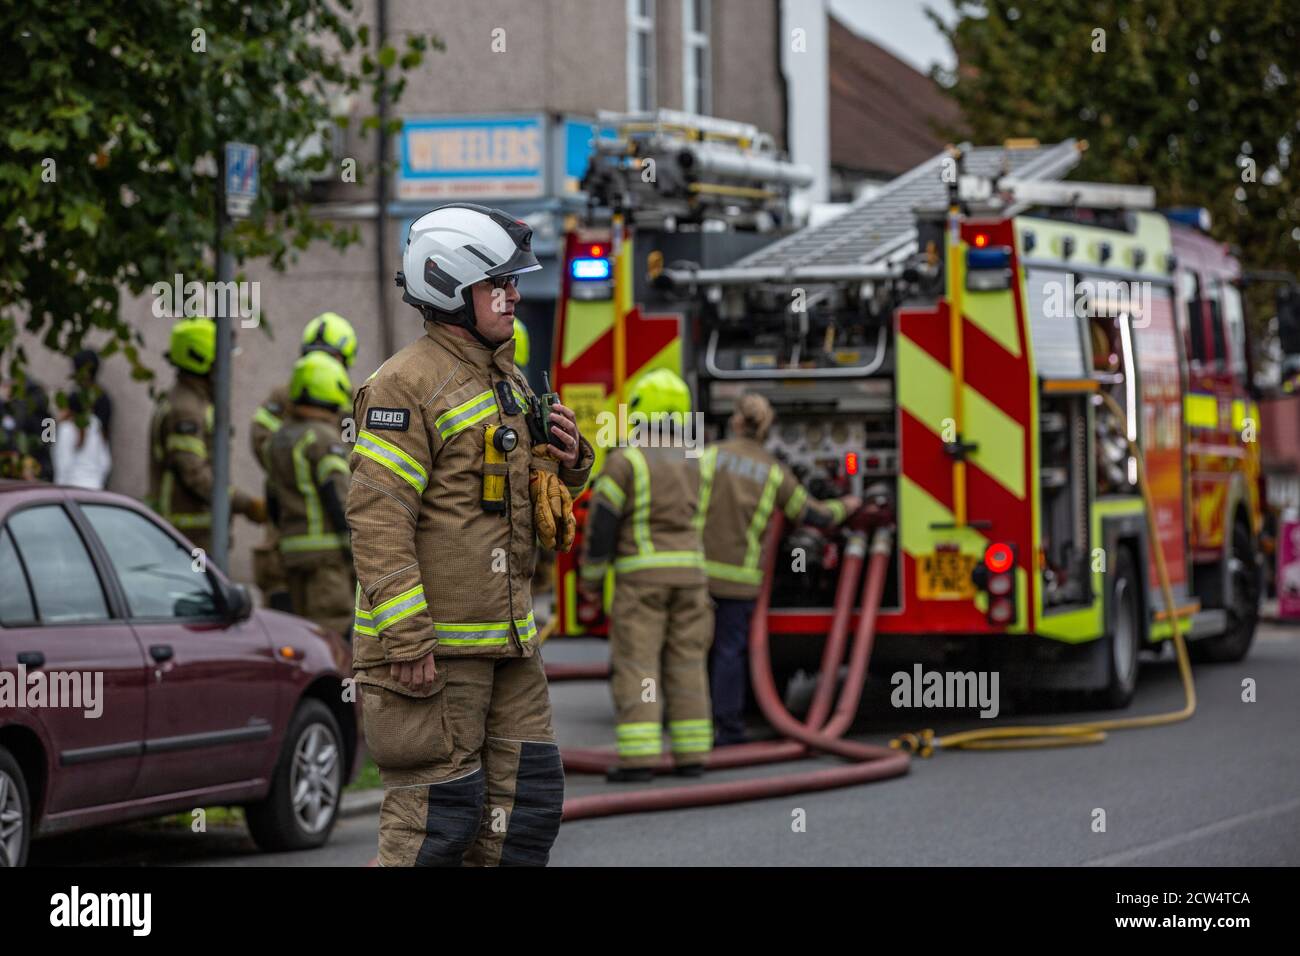 London Fire Brigade bei einem Hausbrand in einer Wohnstraße in Croydon, South London, England, Vereinigtes Königreich Stockfoto